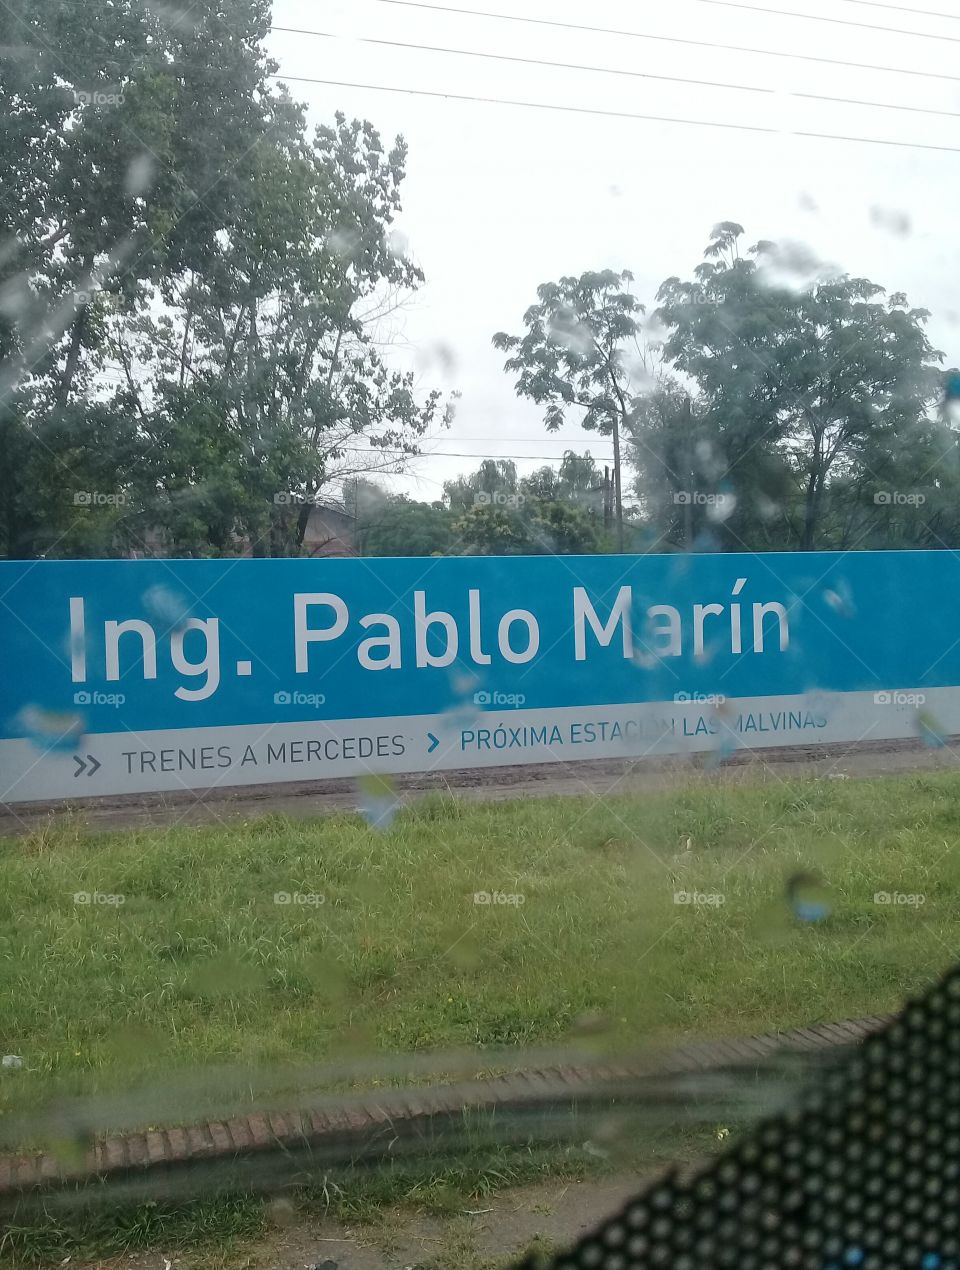 cartel indicador de estación de tren tomado desde el interior de un tren (barrio Pablo Marín, ciudad de General Rodríguez, provincia de Buenos Aires)